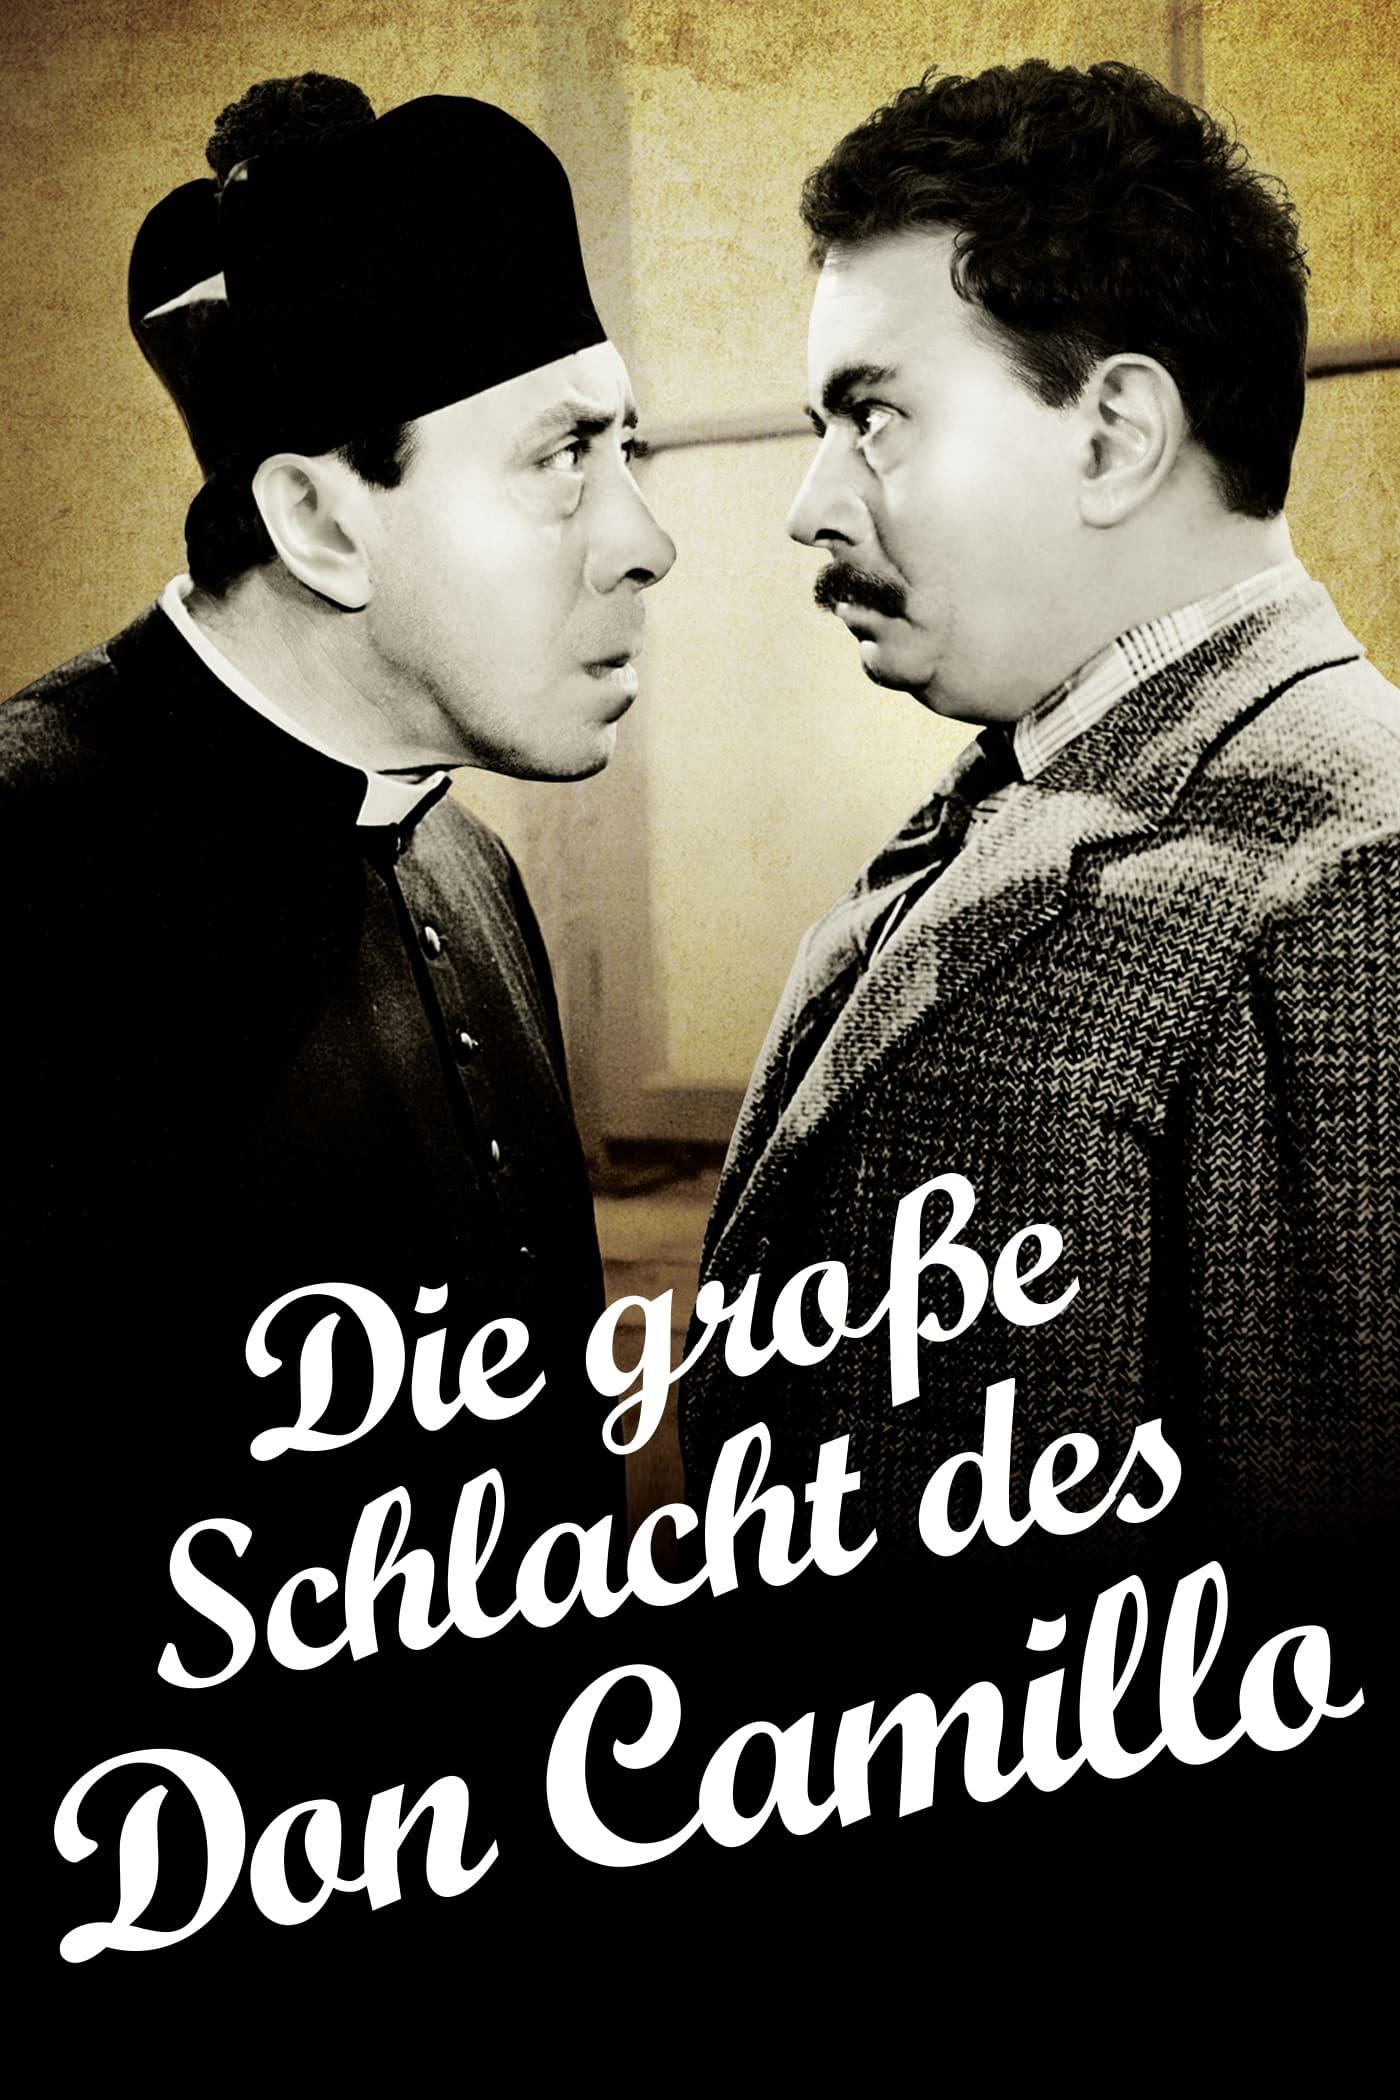 Die große Schlacht des Don Camillo poster